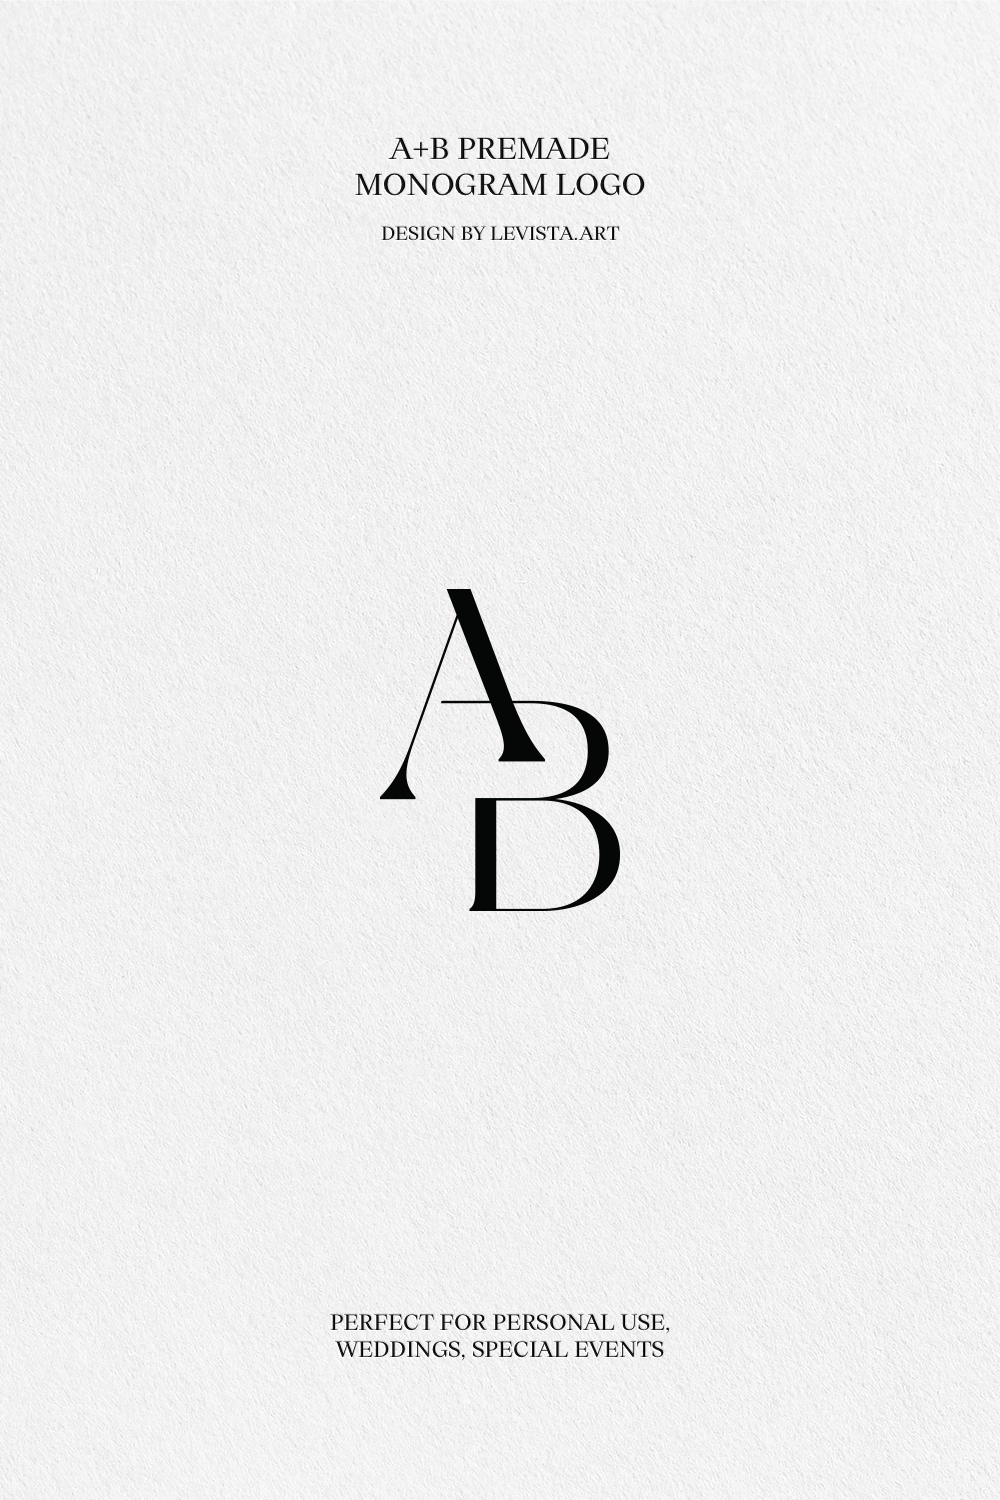 AB premade monogram logo design